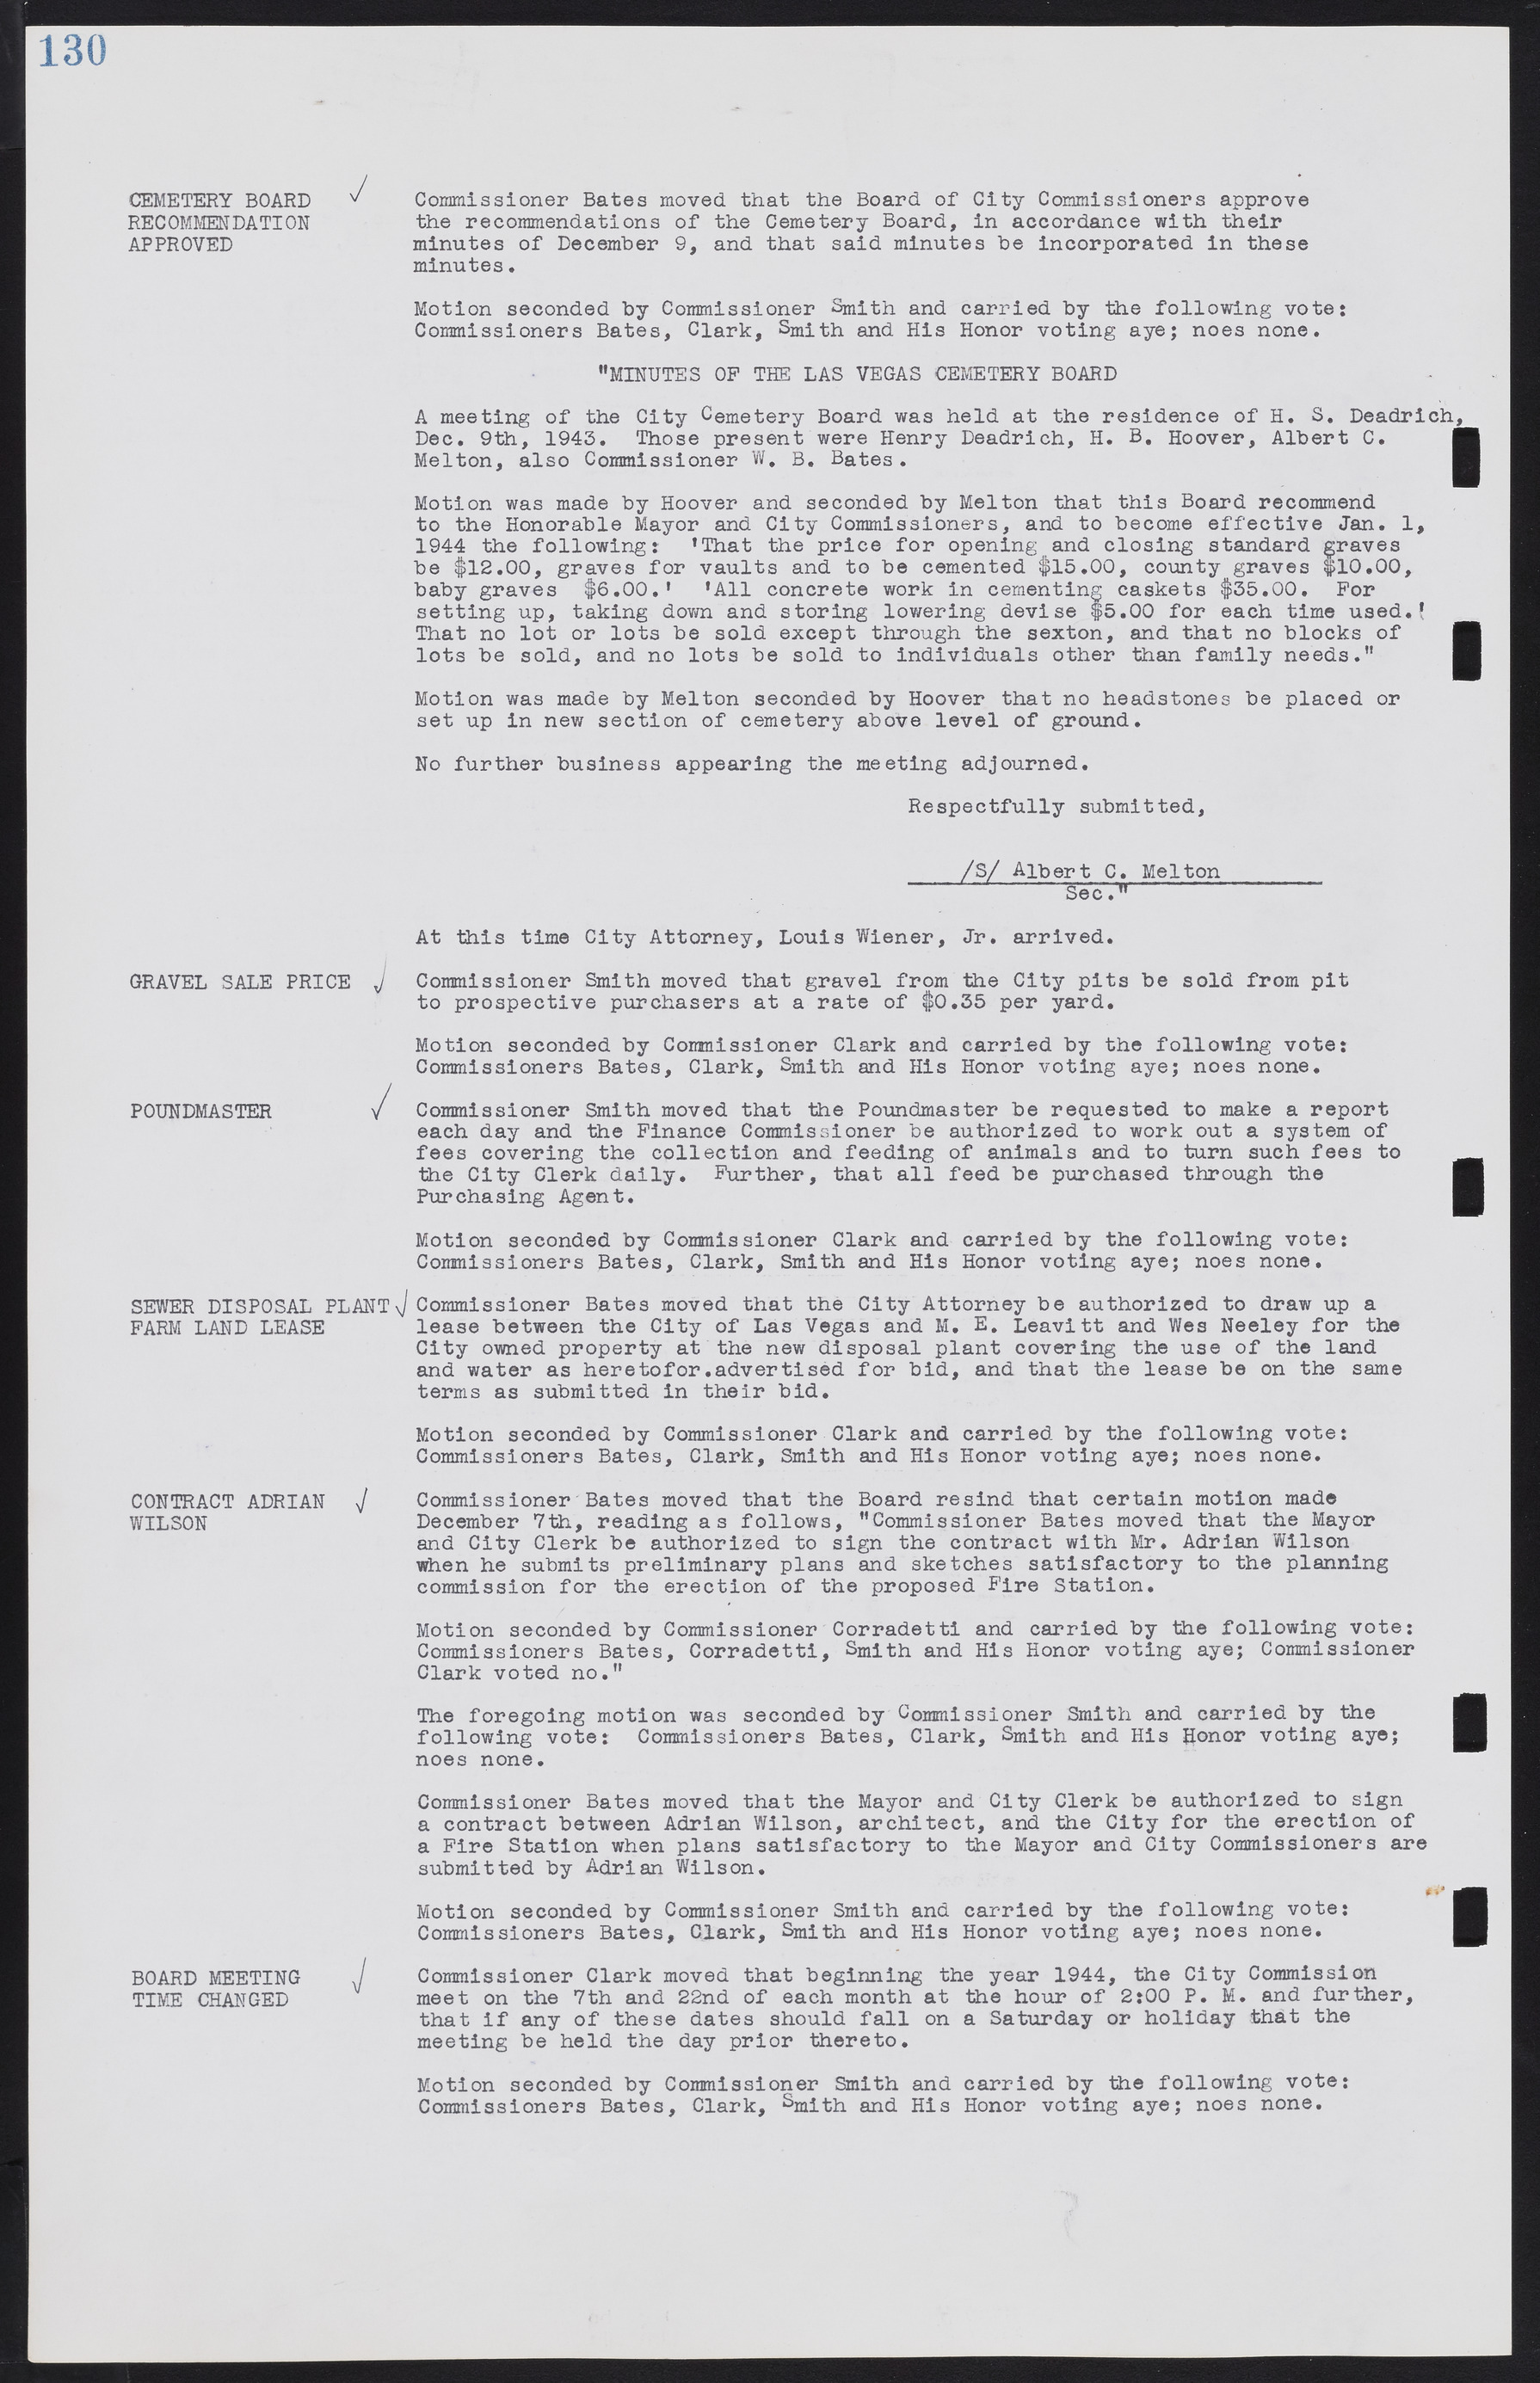 Las Vegas City Commission Minutes, August 11, 1942 to December 30, 1946, lvc000005-144